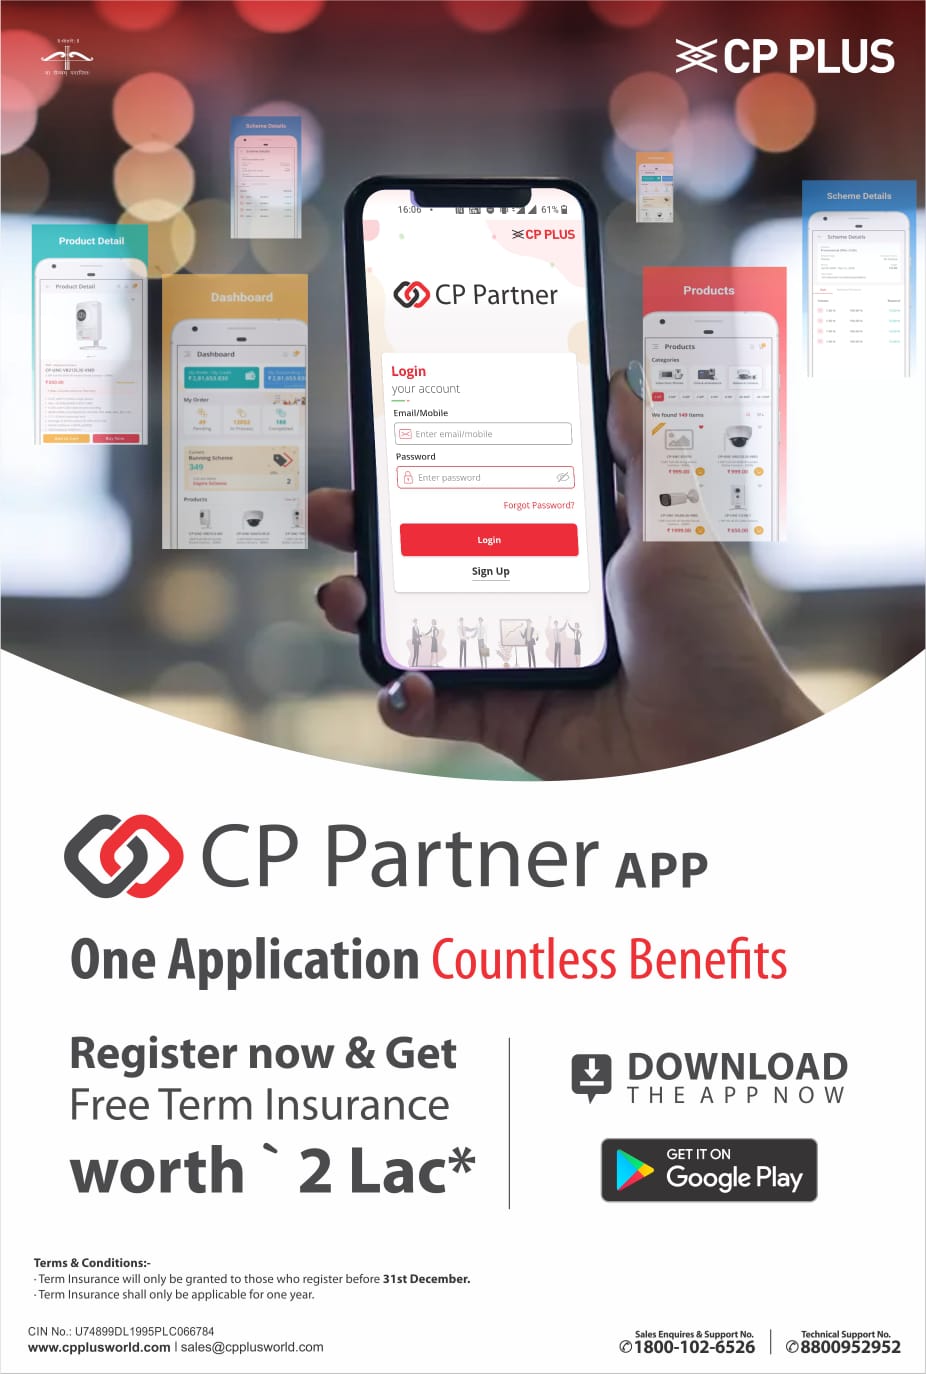 CP Partner App- Countless Benefits